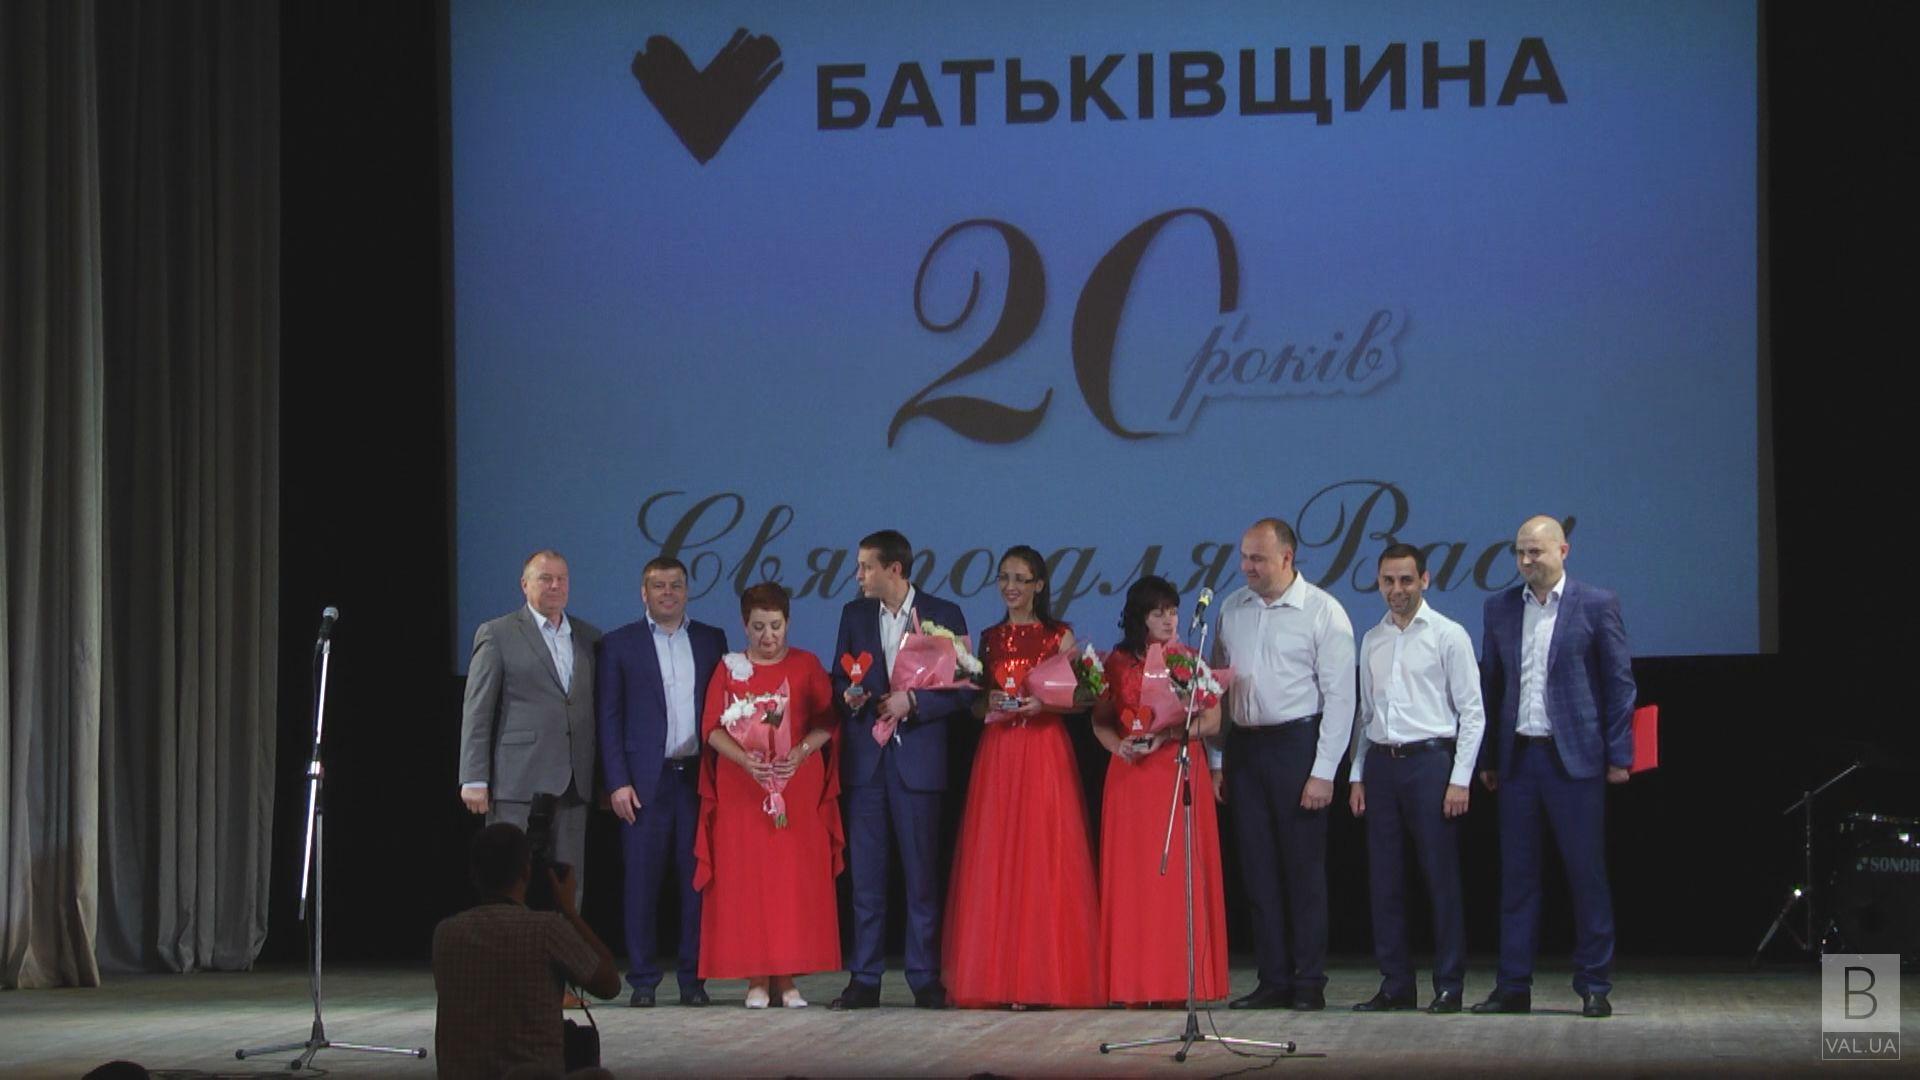 Почтенный юбилей молодой команды: ВО «Батькивщина» празднует 20-летие ВИДЕО